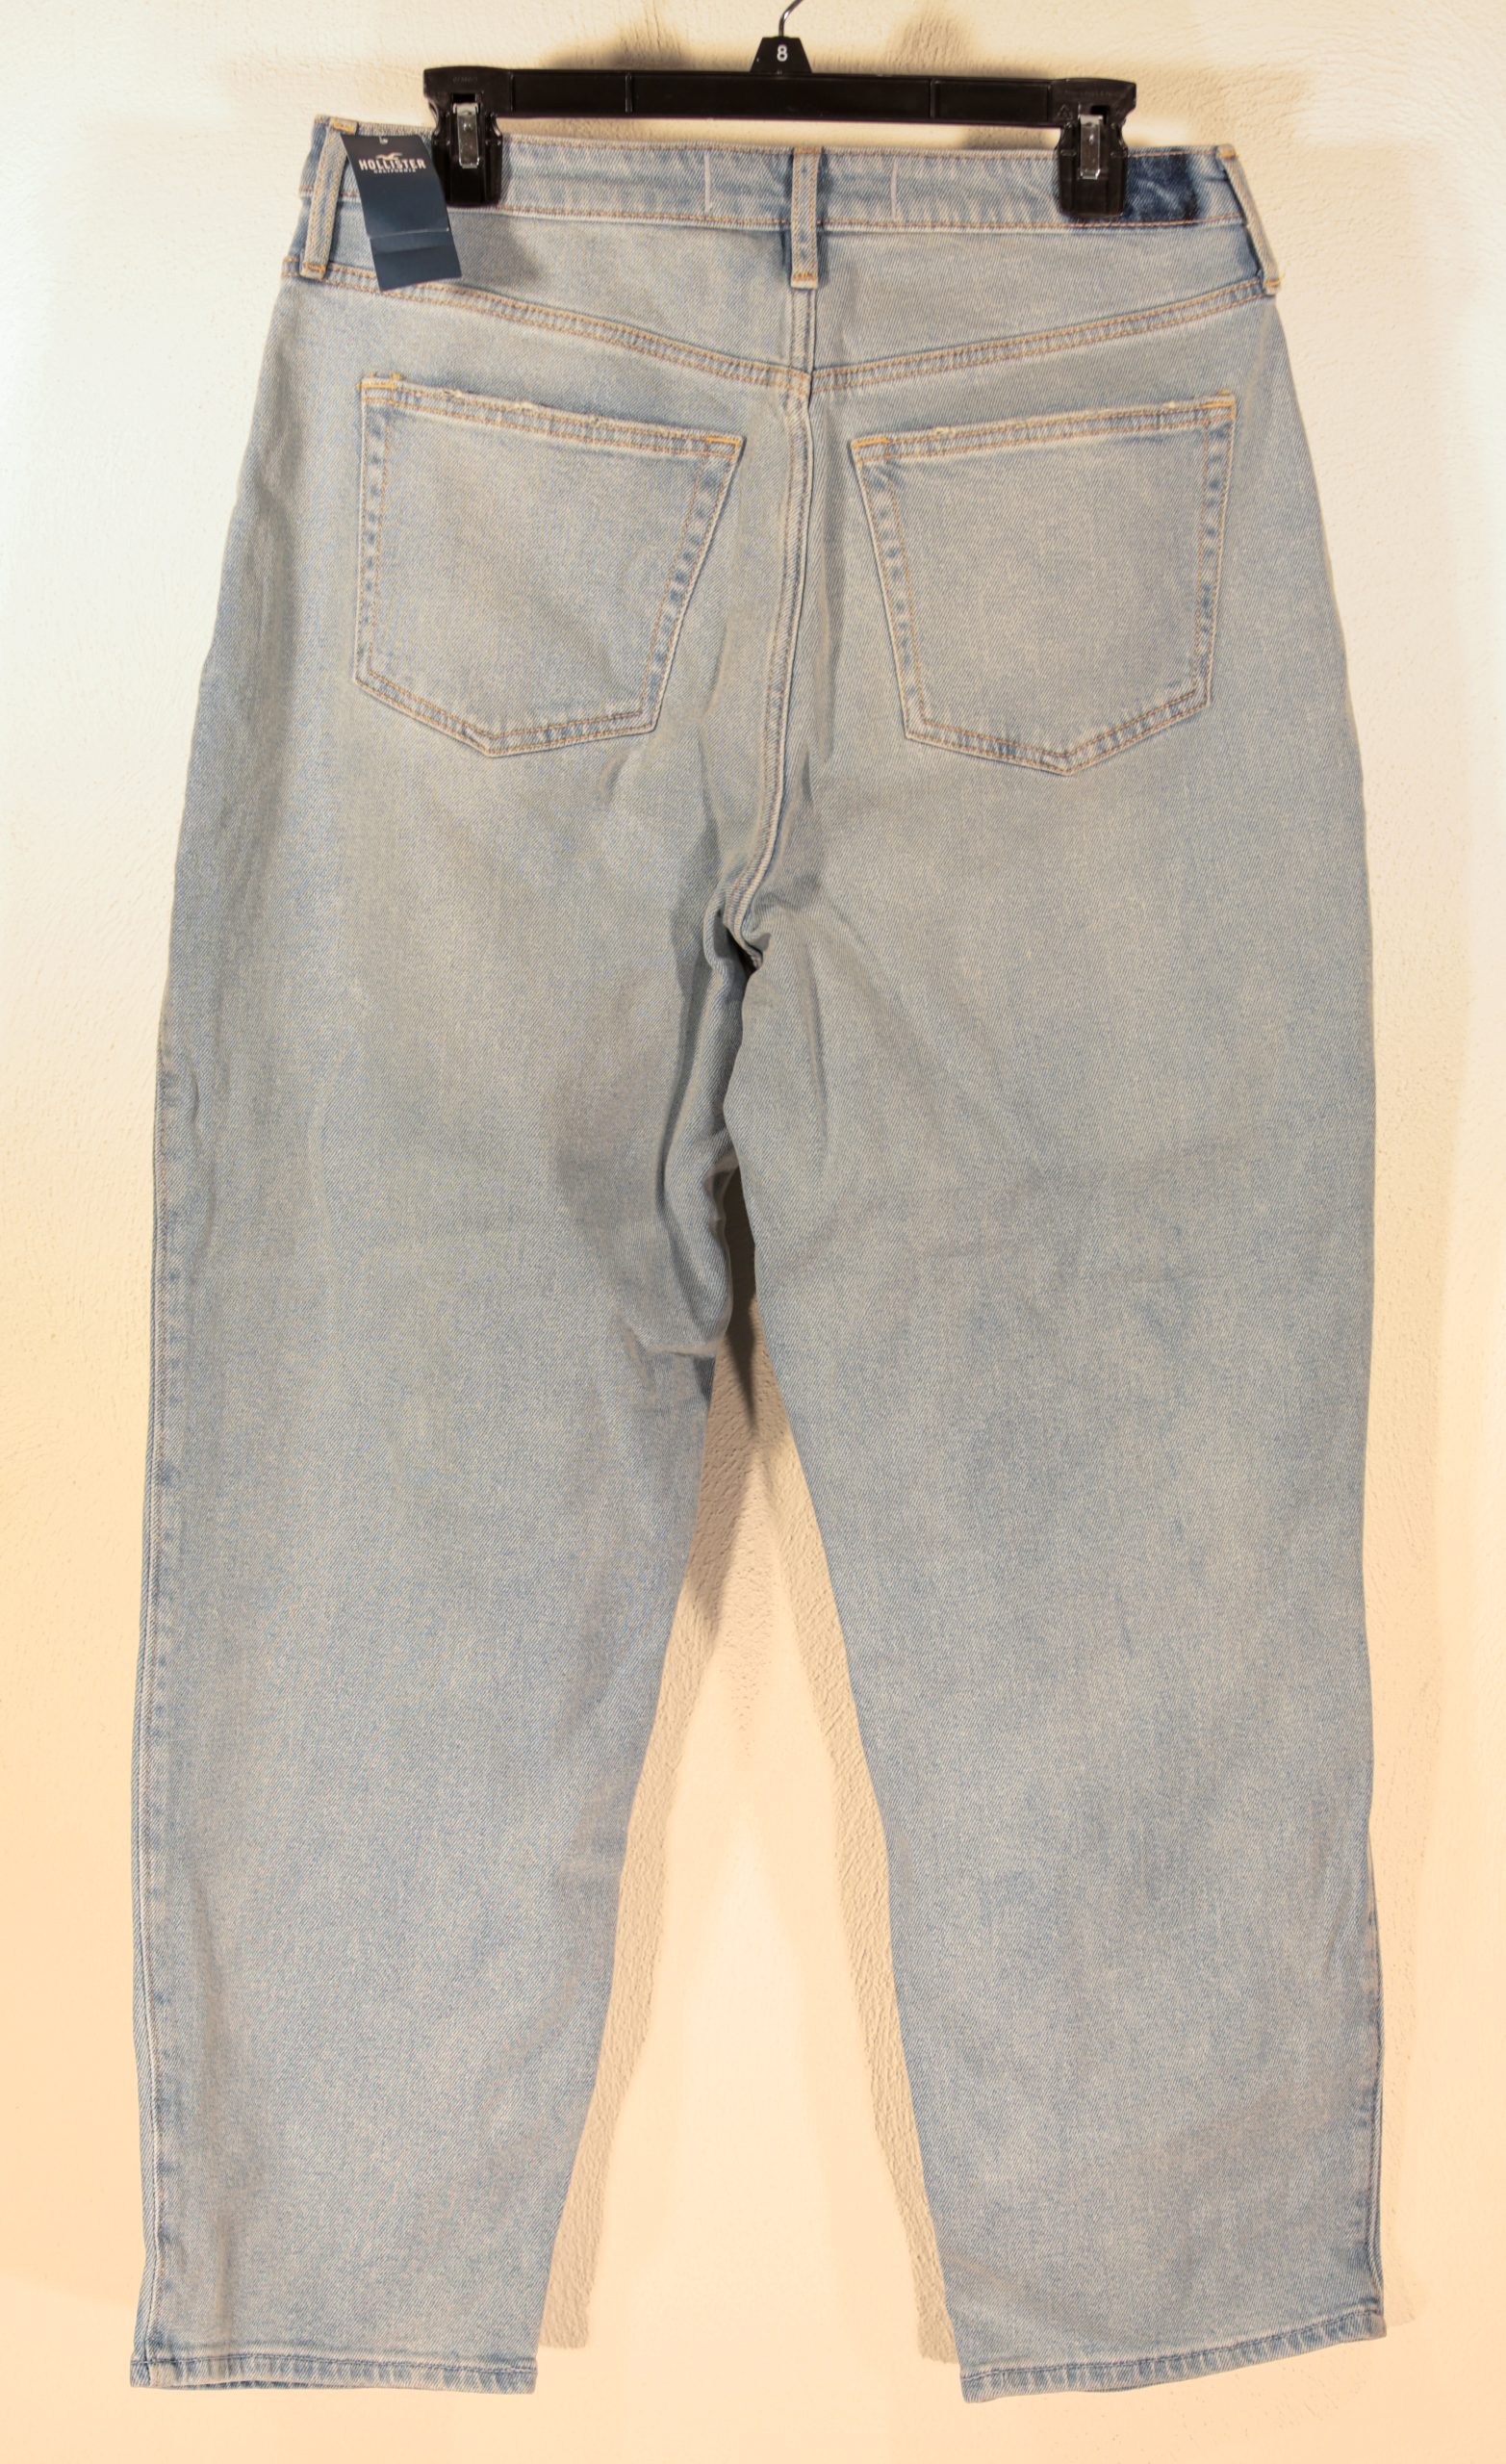 Hollister Jeans – 13R (31Wx27L) – Society of St Vincent de Paul